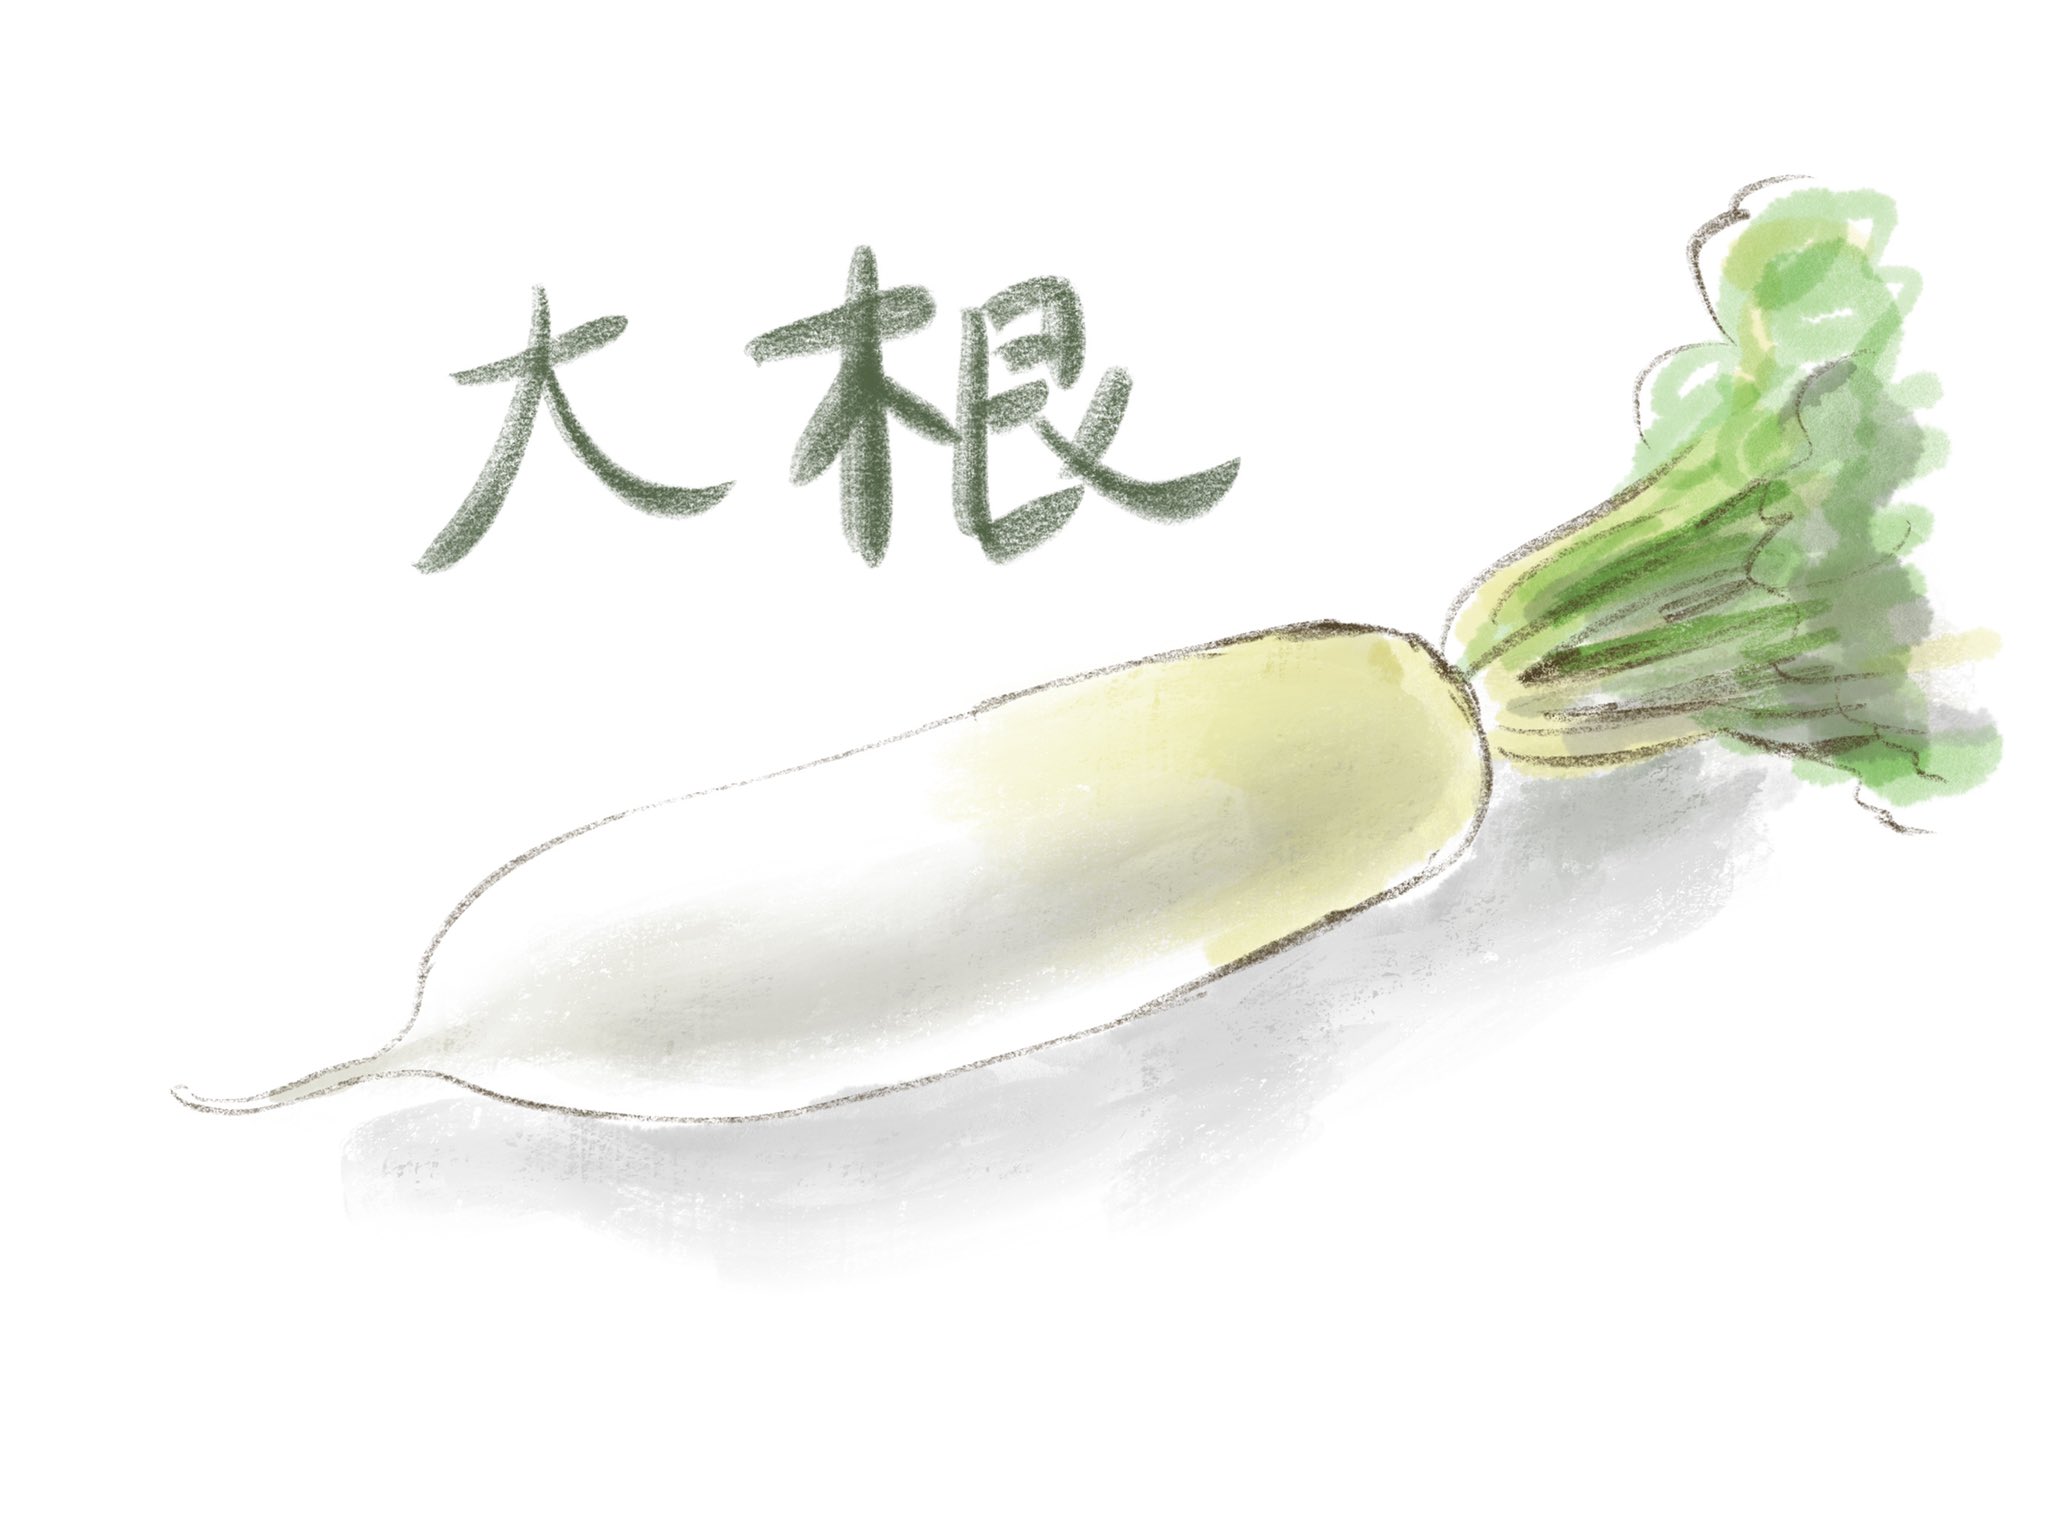 Mayukou デザイナー 冬に美味しいお野菜 大根を描いてみました 色々とお料理に活躍してくれそうです Procreate Illustration イラスト 大根イラスト T Co Absywpgytl Twitter